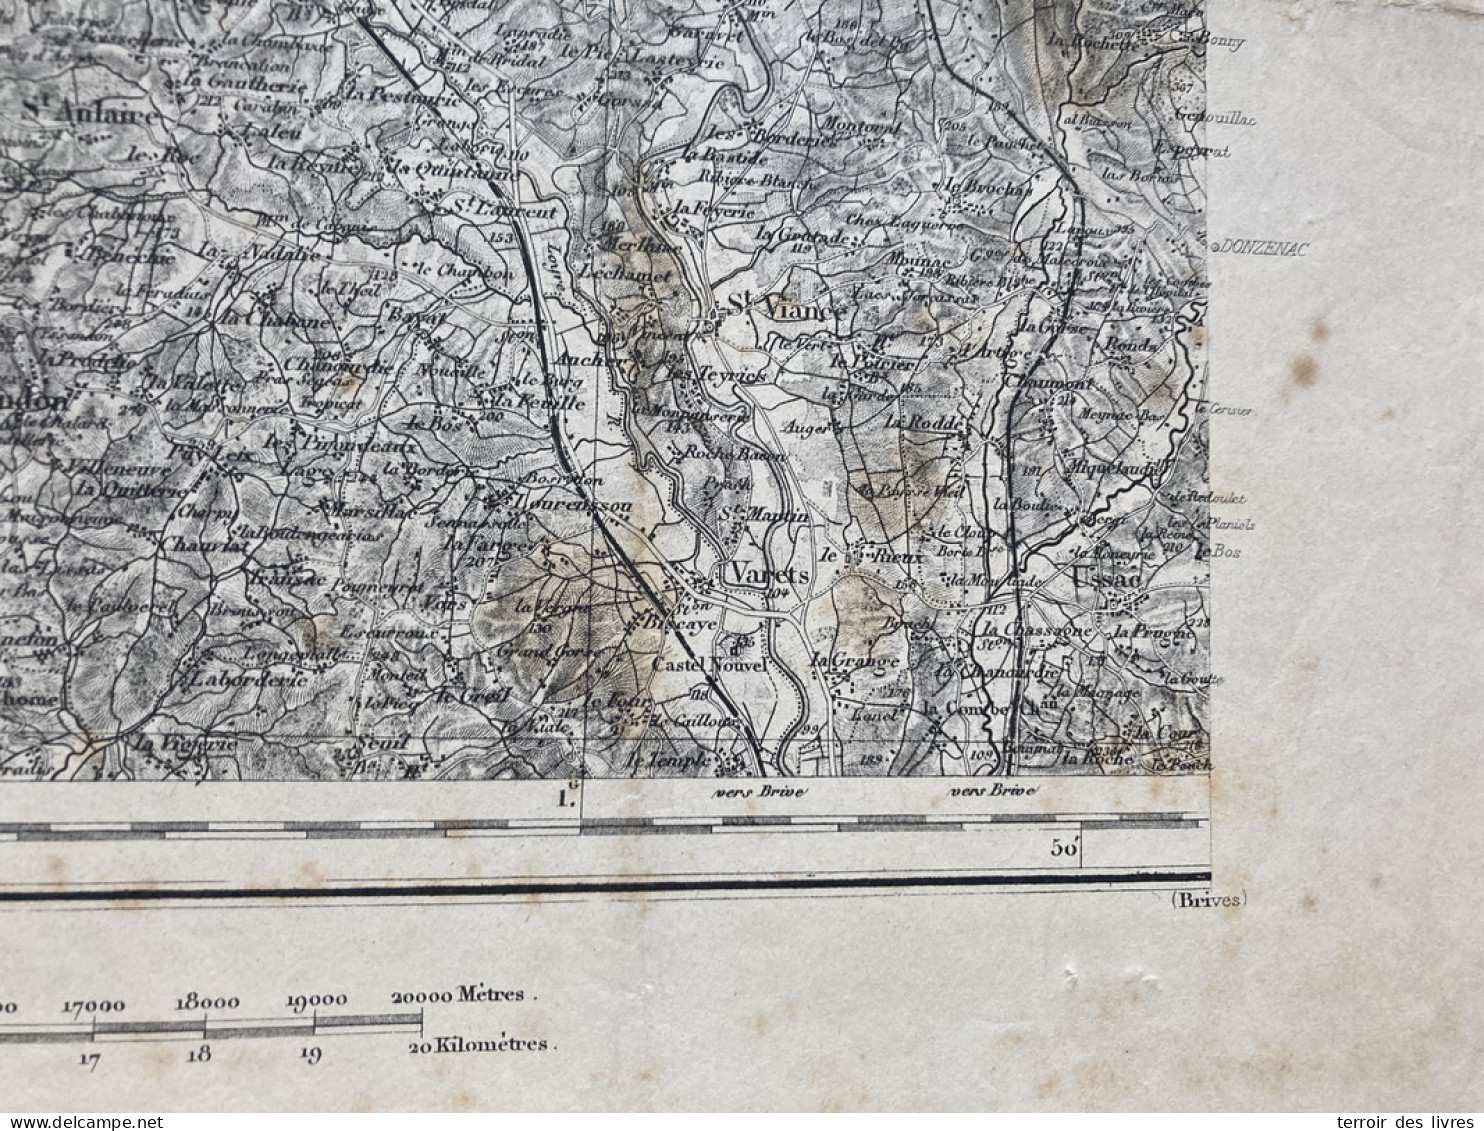 Carte état Major TULLE S.O. 1863 1892 35x54cm AYEN ST-CYPRIEN ST-ROBERT PERPEZAC-LE-BLANC VARS-SUR-ROSEIX LOUIGNAC ST-AU - Geographical Maps